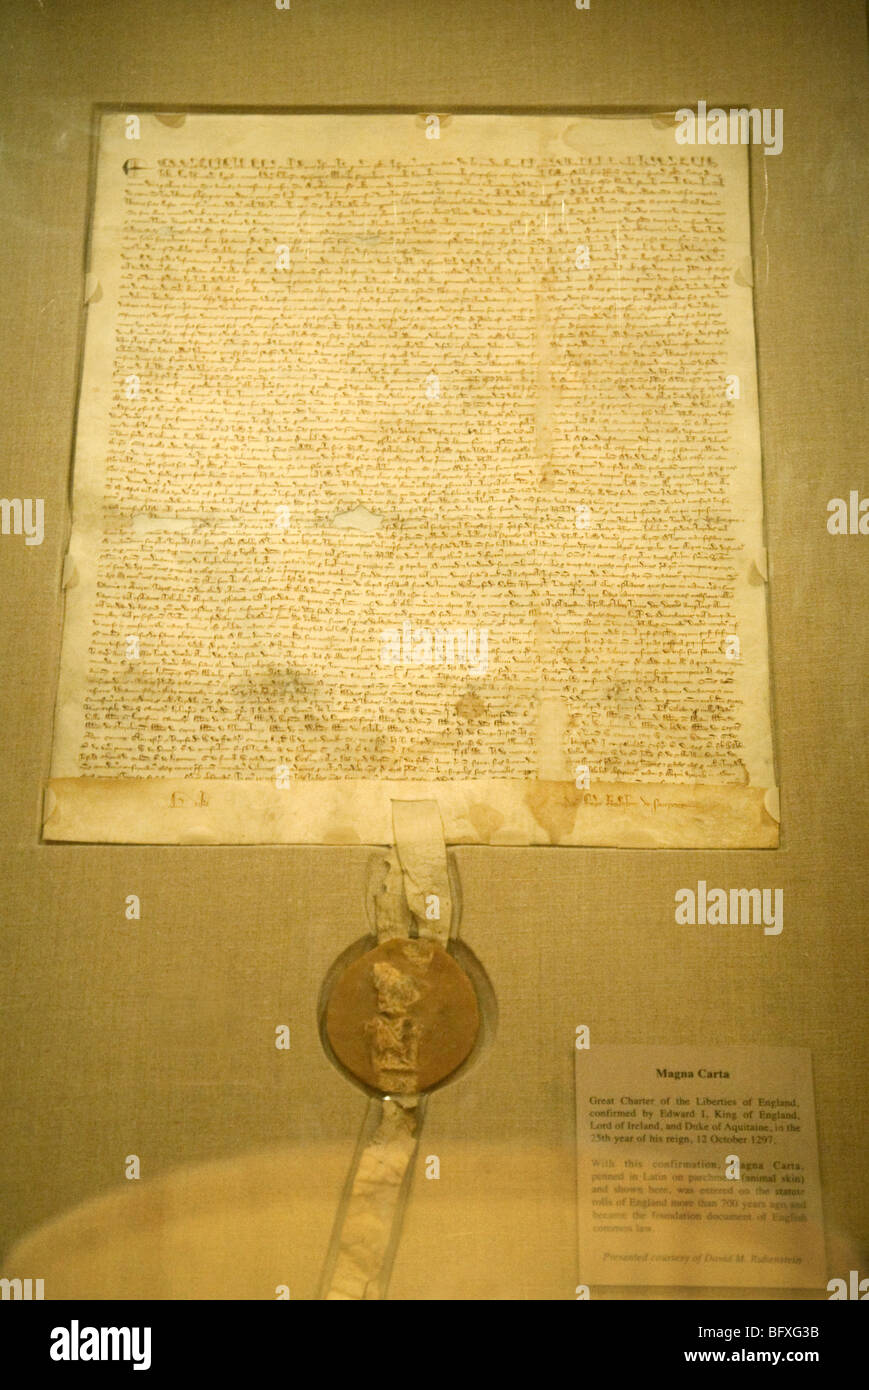 Copia originale della Magna Carta del documento sul prestito per gli archivi nazionali, Washington DC, Stati Uniti d'America. Vedere CNPX83 per la versione migliorata Foto Stock